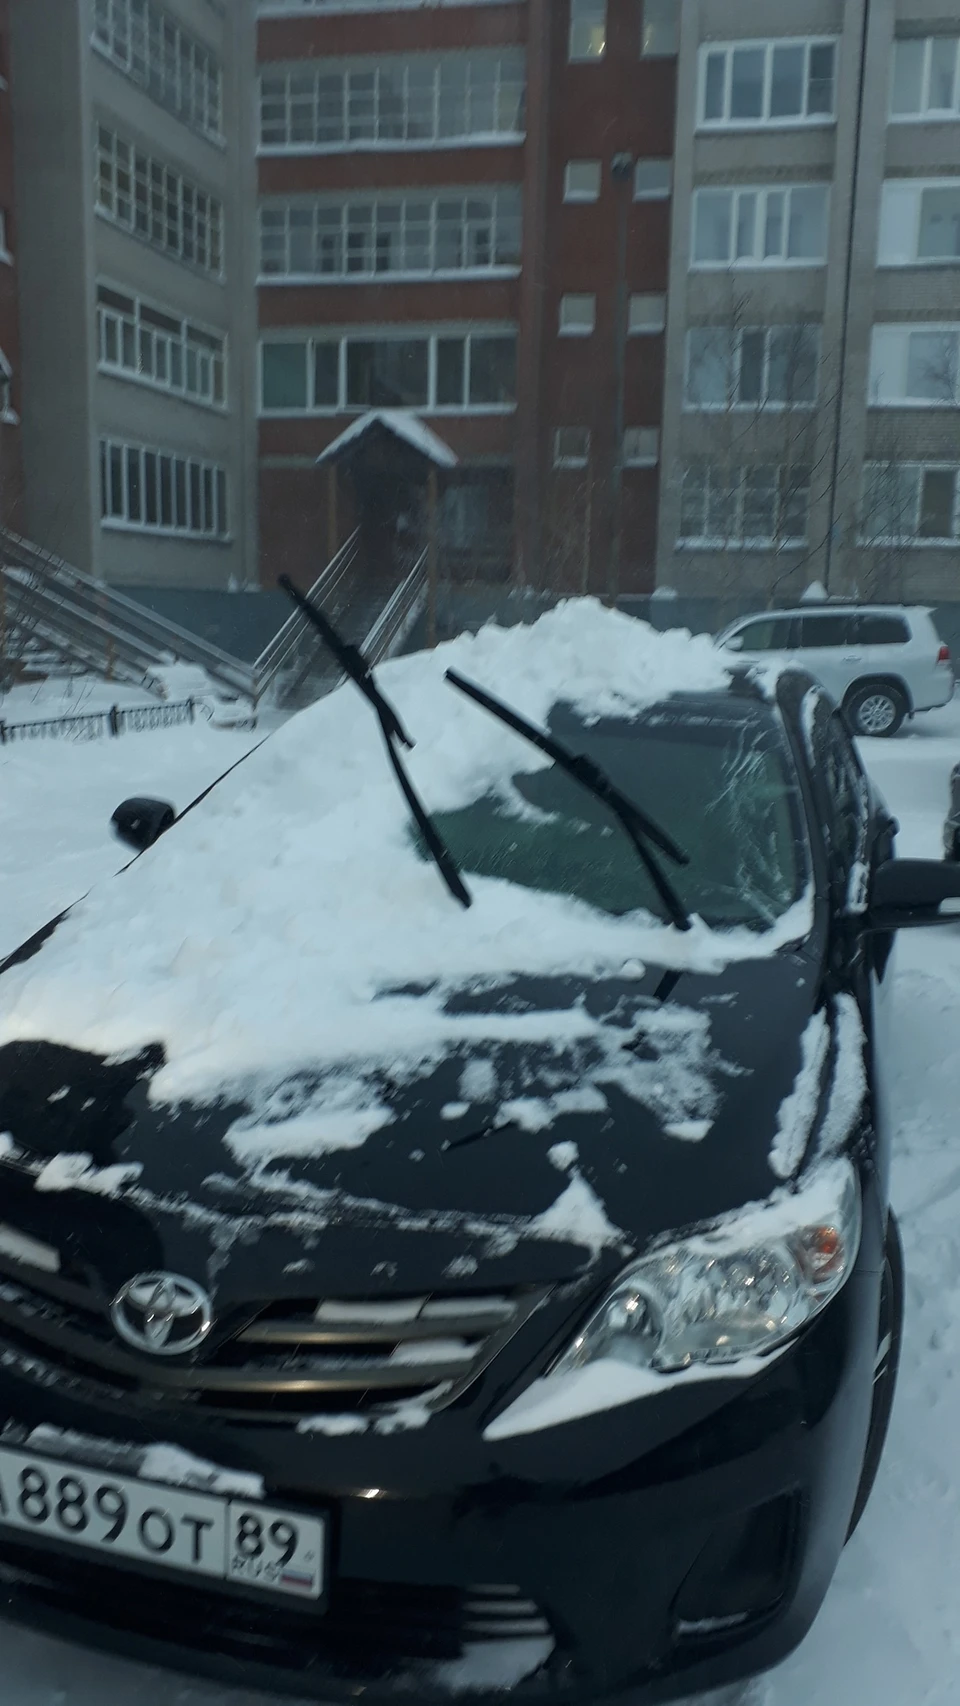 Салехард снег. Снег упал на машину. Разбитая машина в снегу. Снег на крыше машины. Снег с крыши упал на автомобиль.